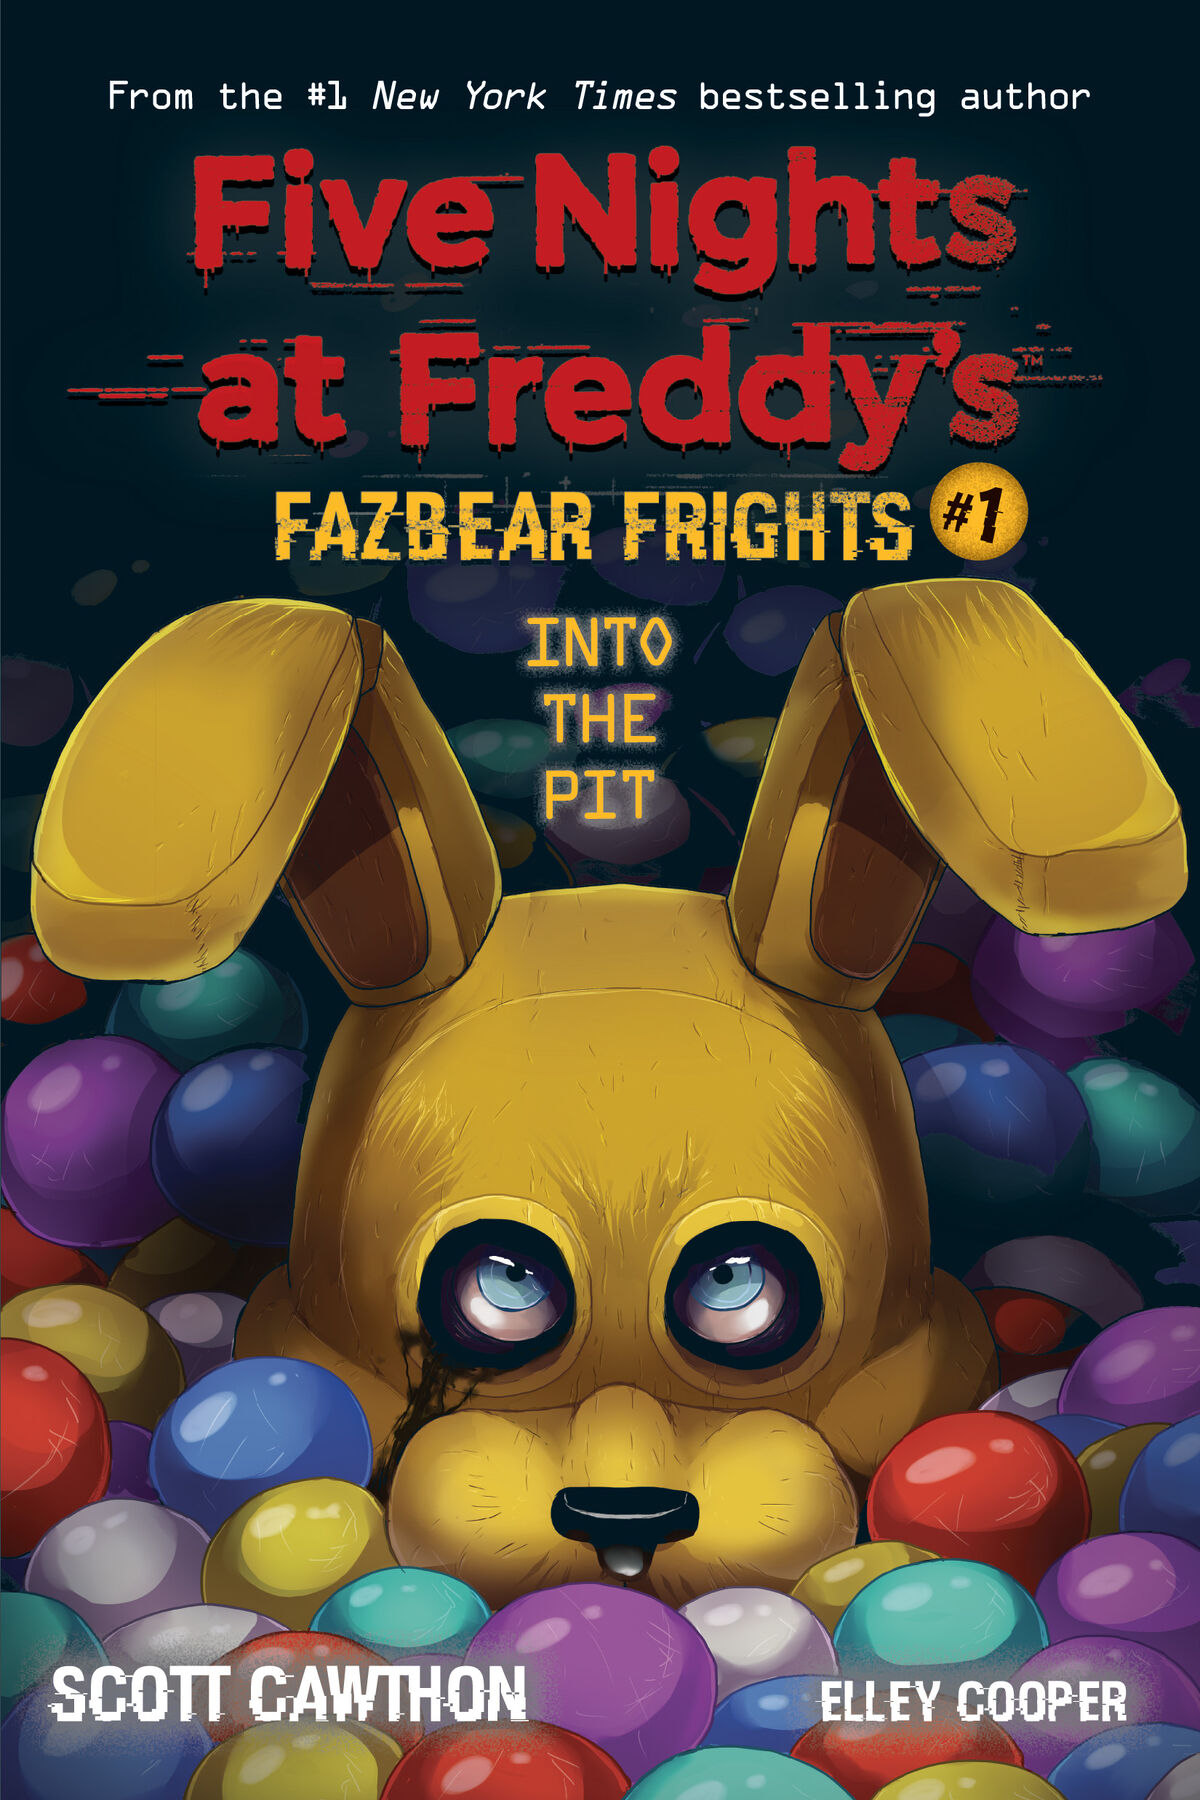 Five Nights At Freddy's As aventuras de uma segurança - 20